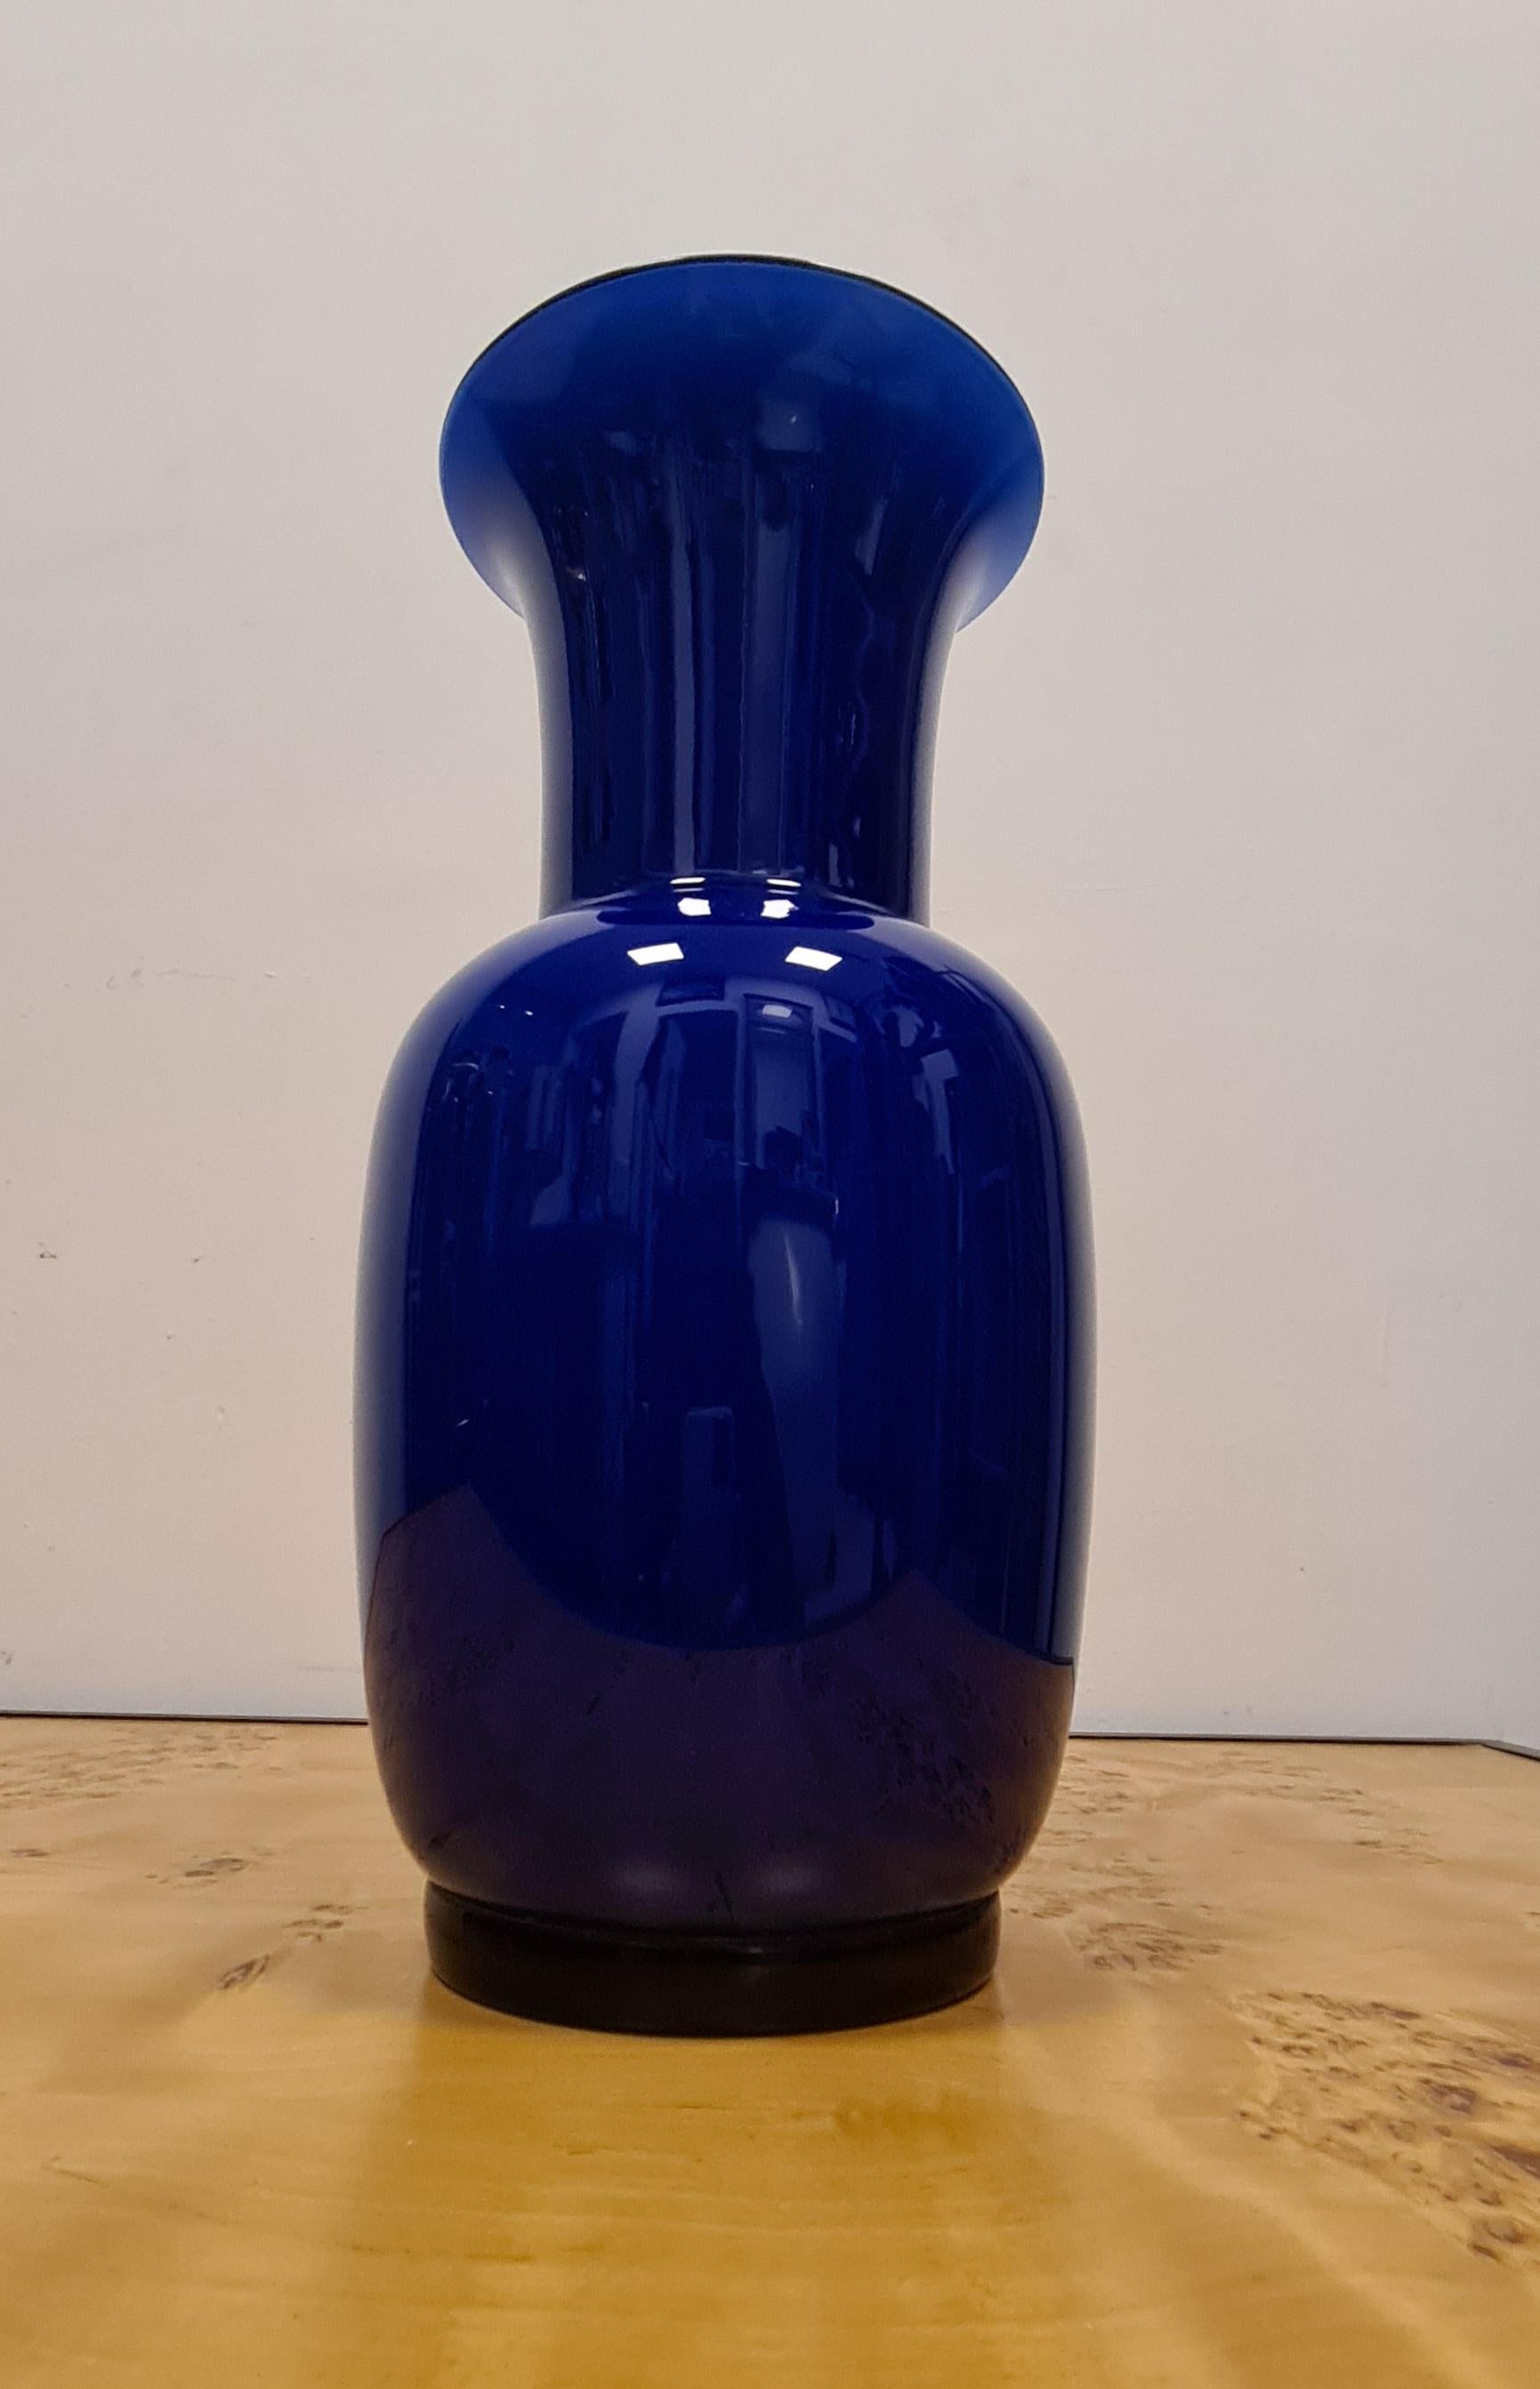 Opalglasvase Modell 706.22 aus der Glashütte Venini.

Eine raffinierte Vase, entworfen von Paolo Venini im Jahr 1932.

Die Eleganz des Opalglases entsteht durch die Überlagerung von farbigem Glas mit Gitterglas, ein komplexes Verfahren, das im 15.